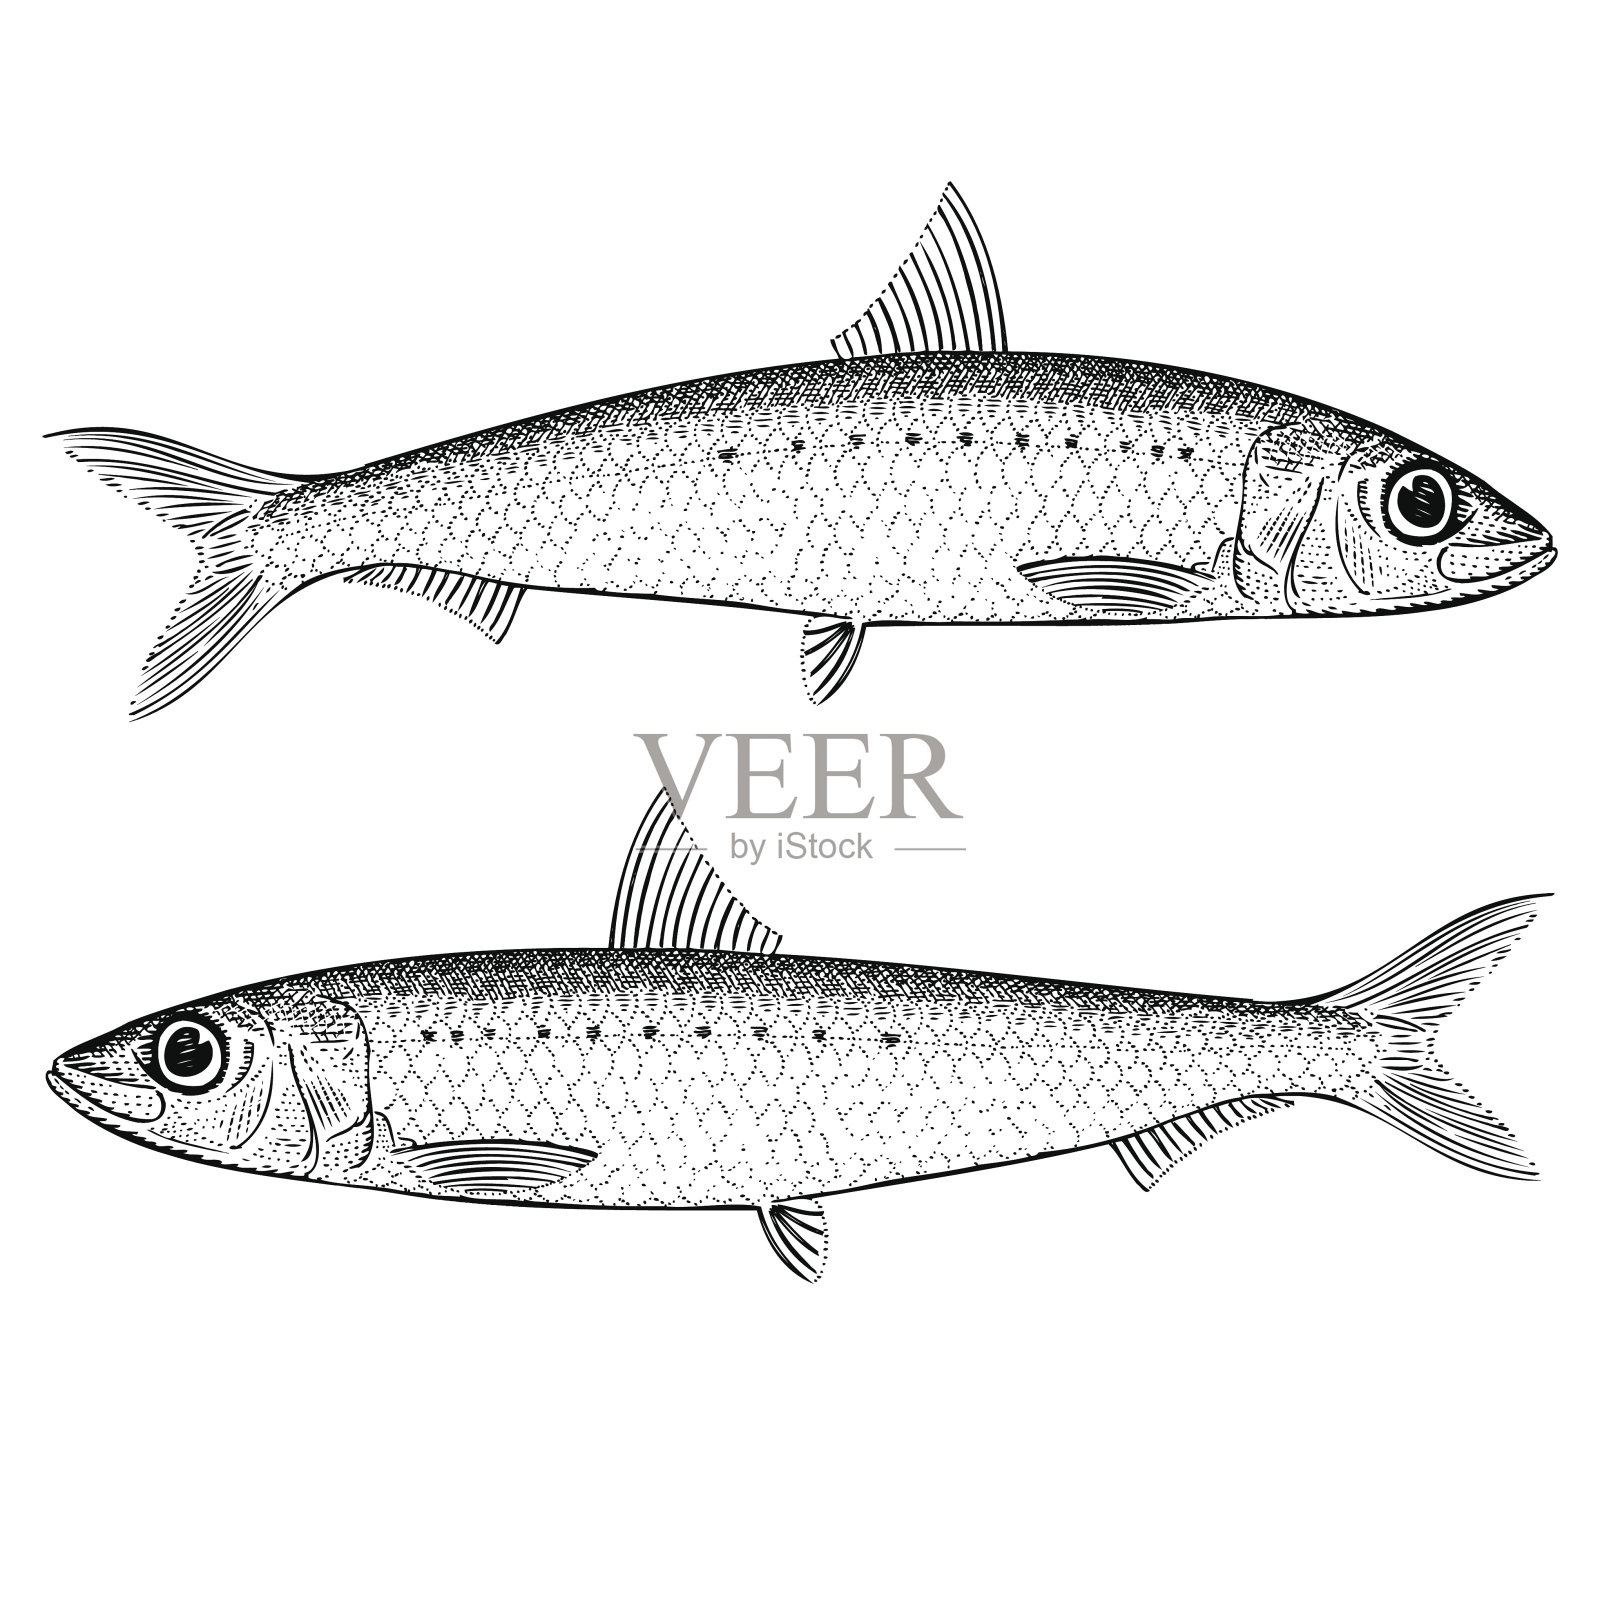 黑白两色的沙丁鱼画插画图片素材